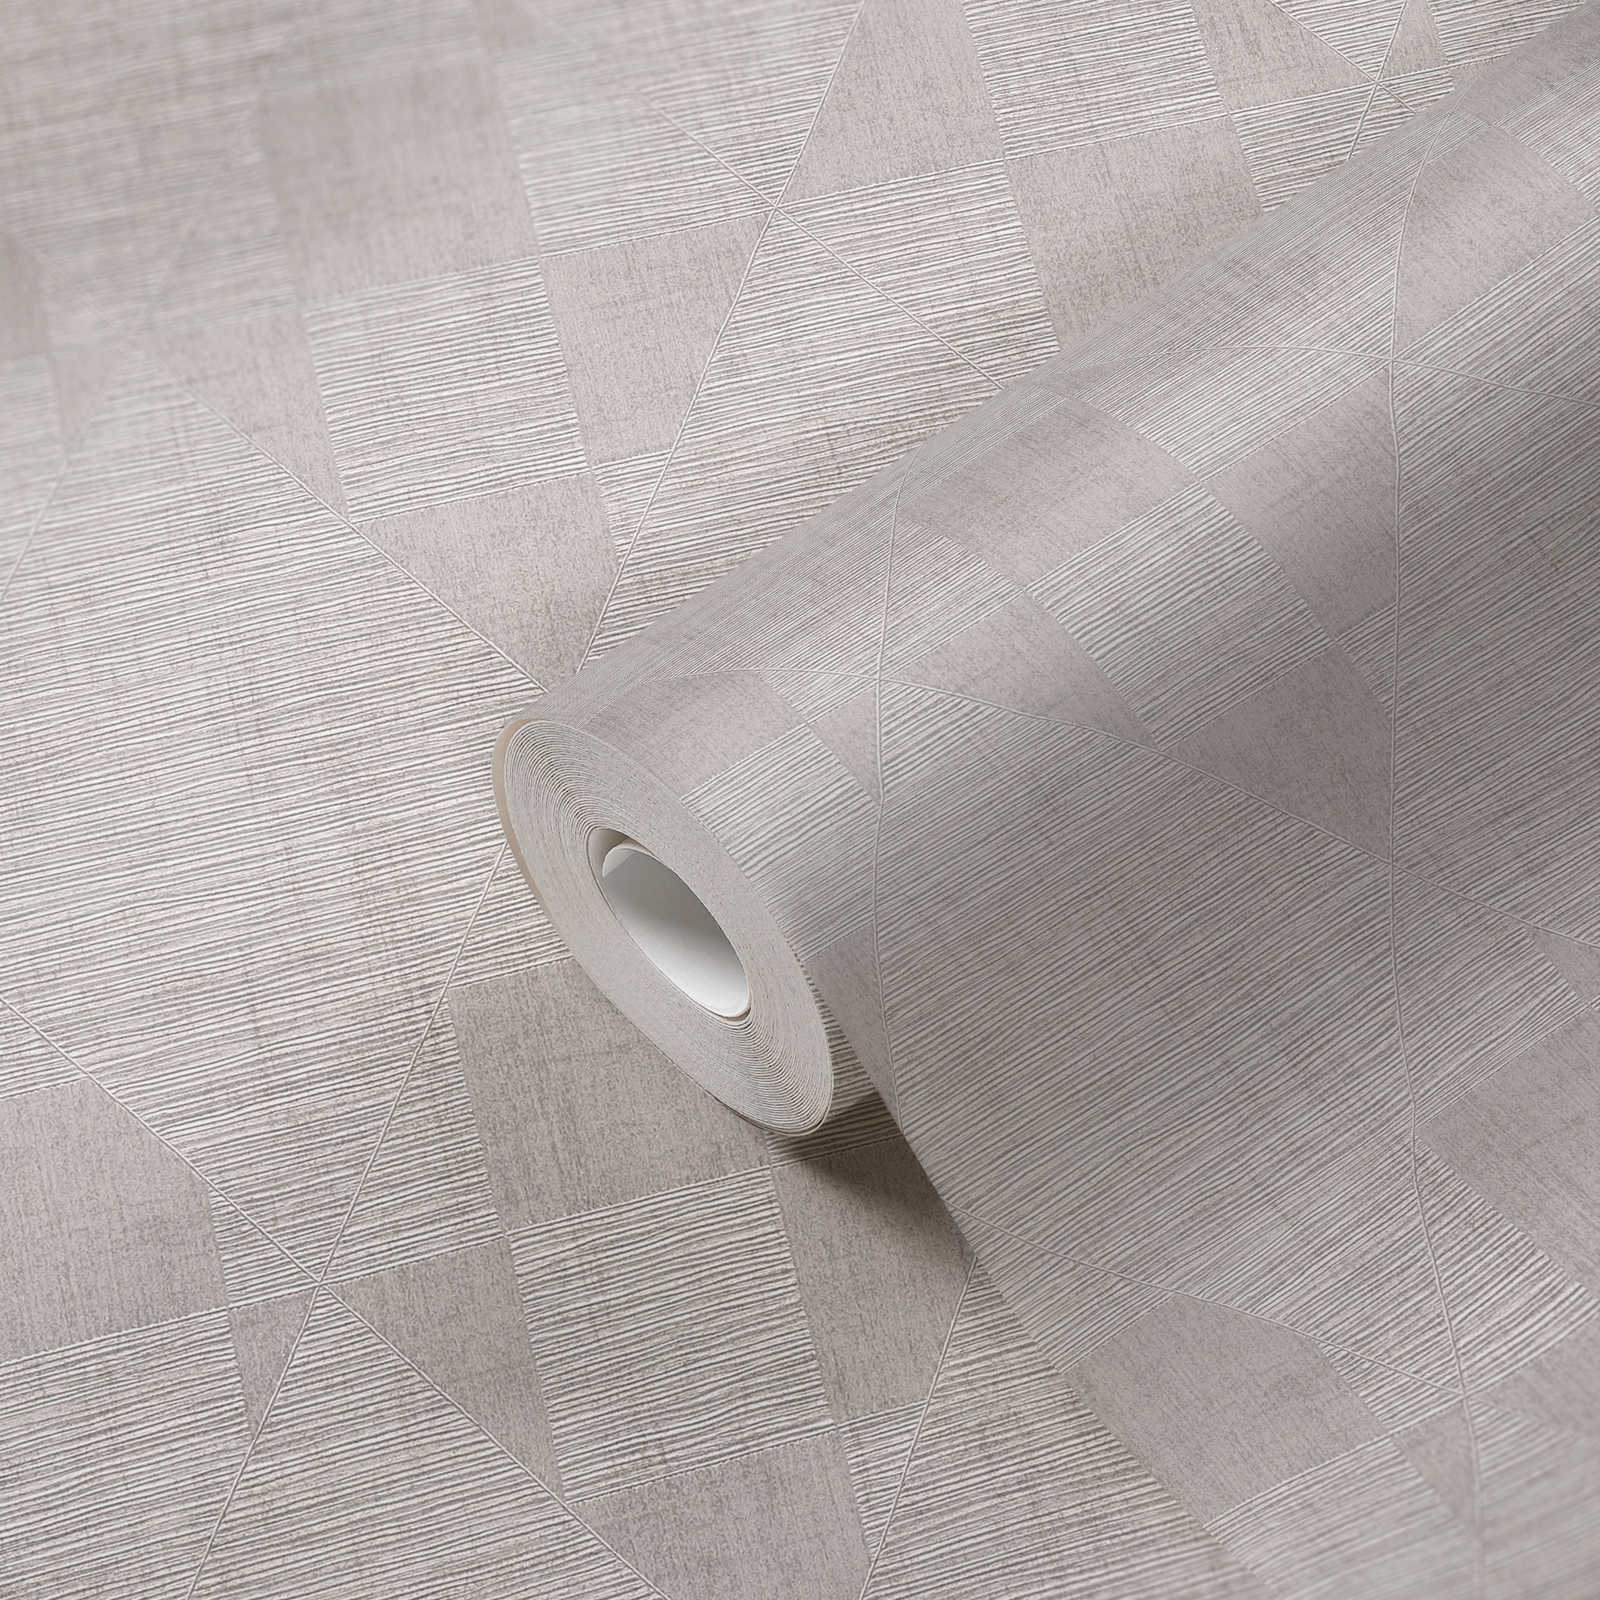             Metallic Tapete mit Retro Muster & Struktureffekt – Beige, Braun
        